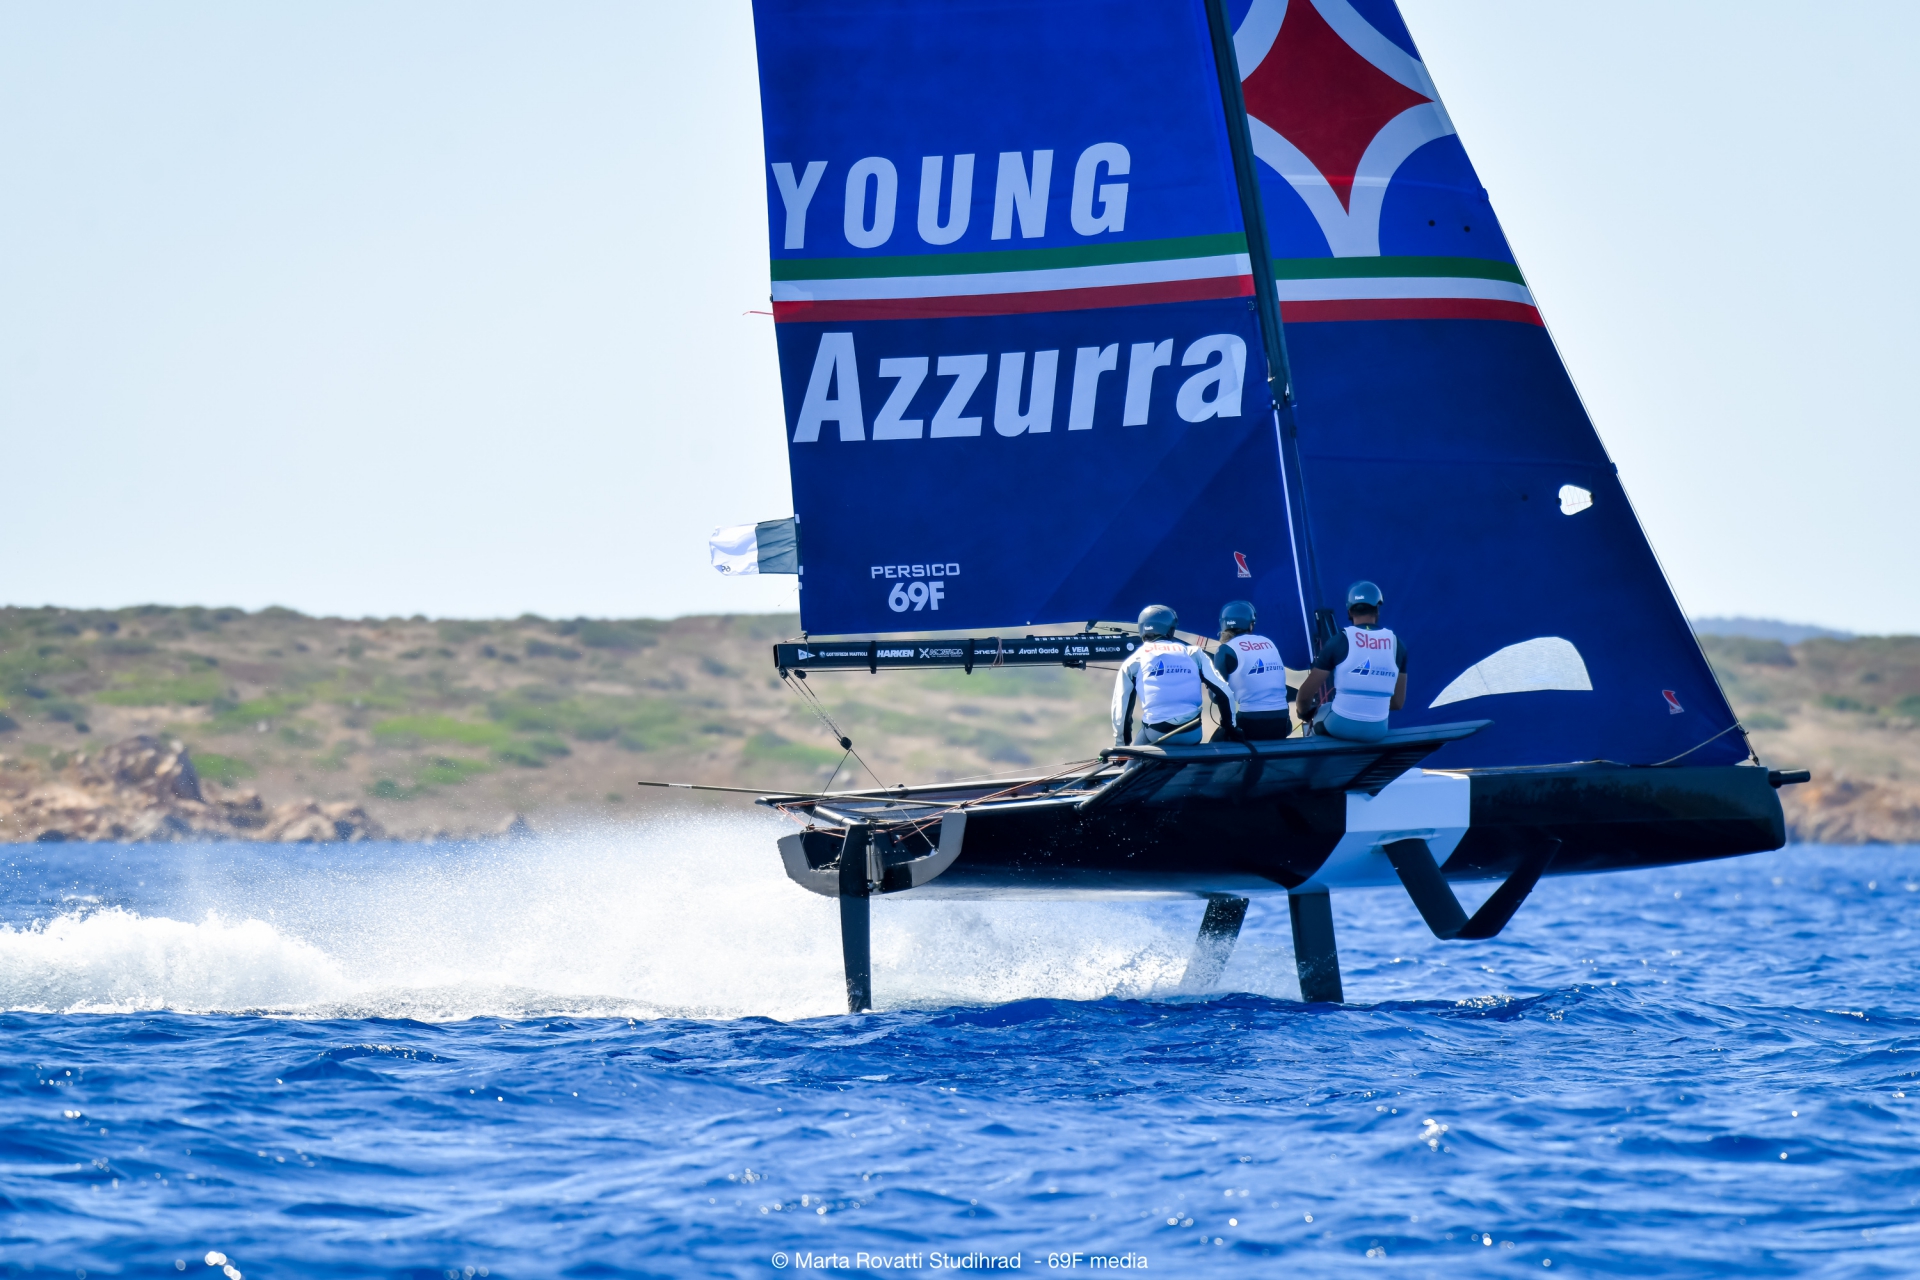 Young Azzurra News - NEWS - YOUNG AZZURRA - Yacht Club Costa Smeralda